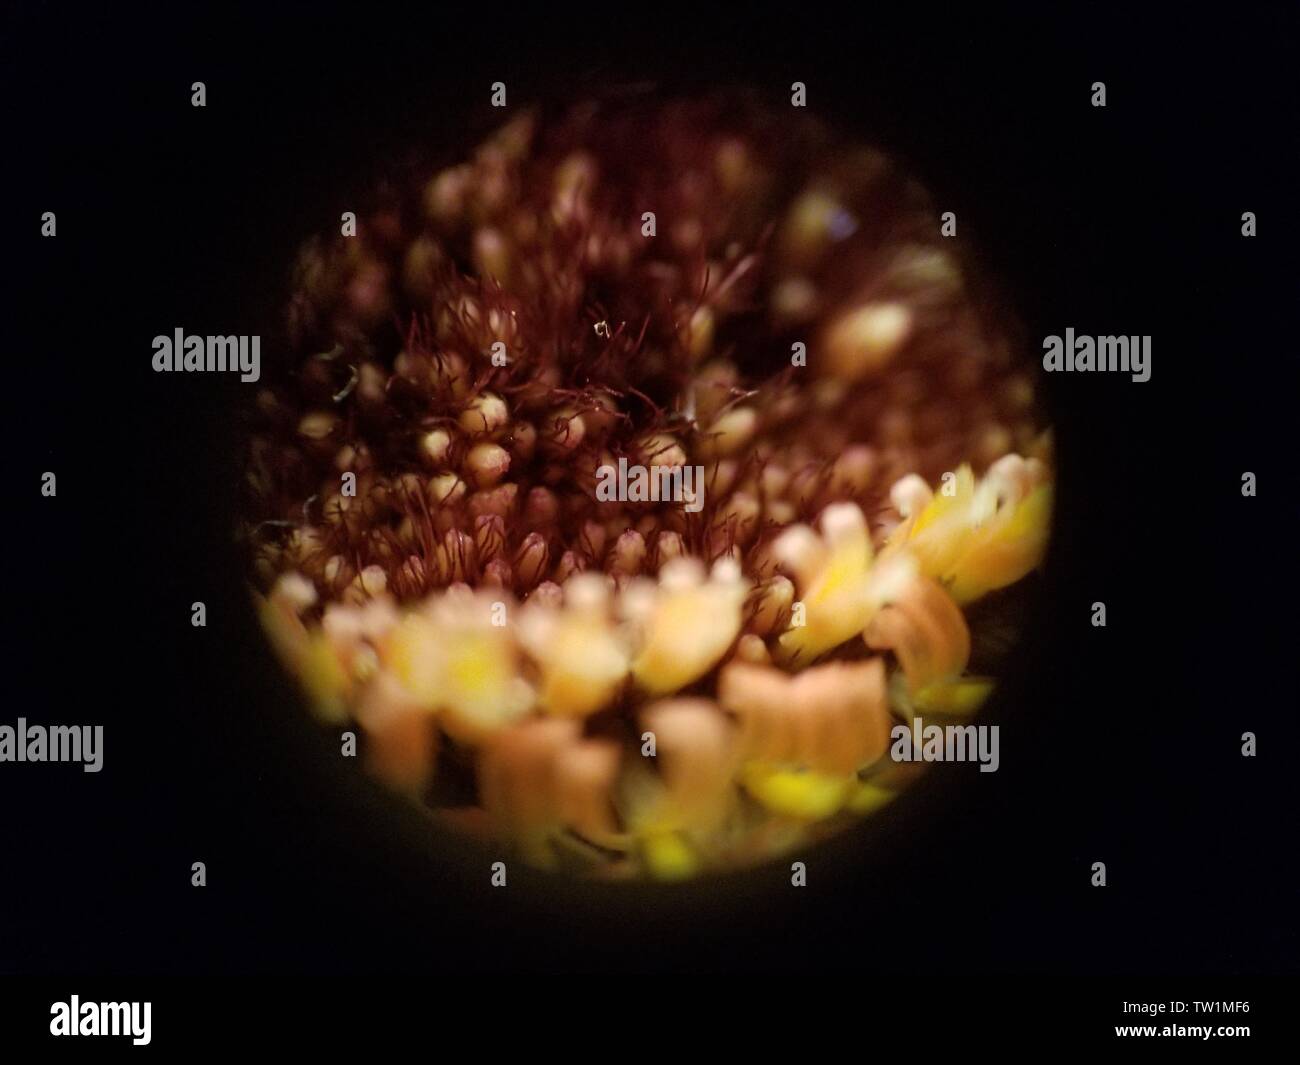 Mikroskop Bild der internen Struktur von Daisy (Gerbera Daisy) Blume auf ca. 30-facher Vergrößerung, 25. Mai 2019. () Stockfoto